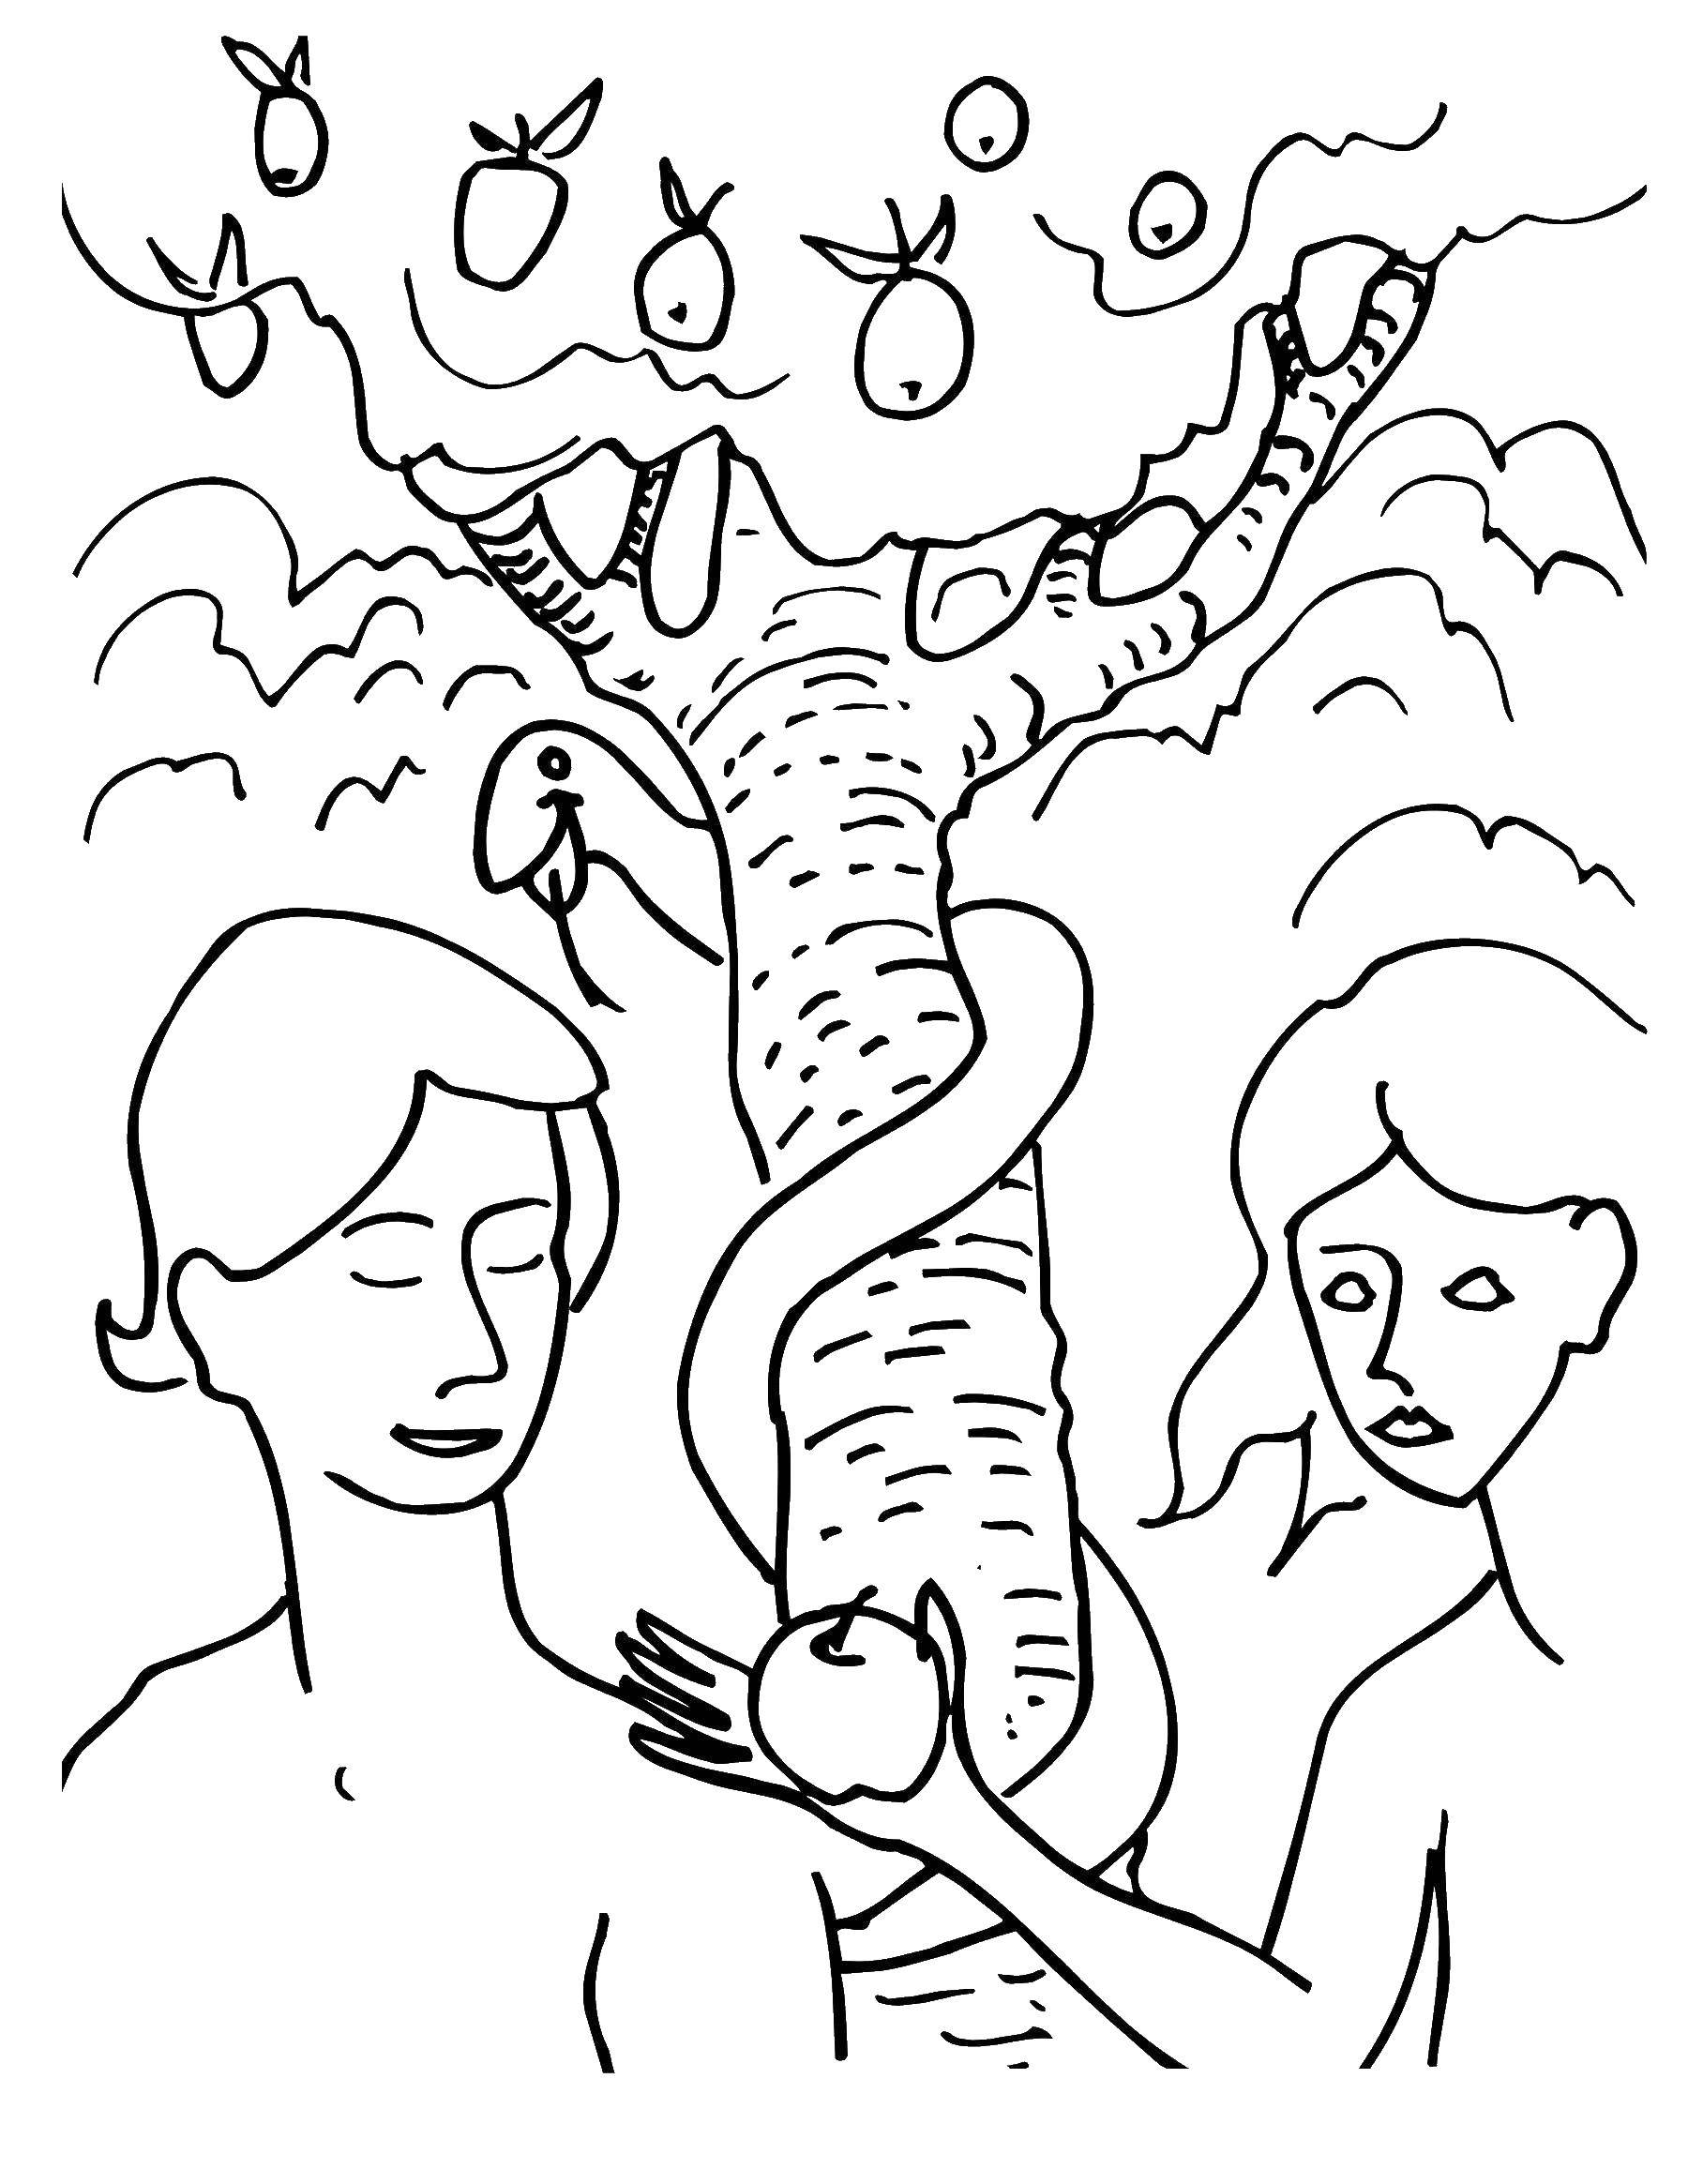 Розмальовки  Адам і єва у забороненого плоду. Завантажити розмальовку адам, єва, світ, земля.  Роздрукувати ,адам і єва,